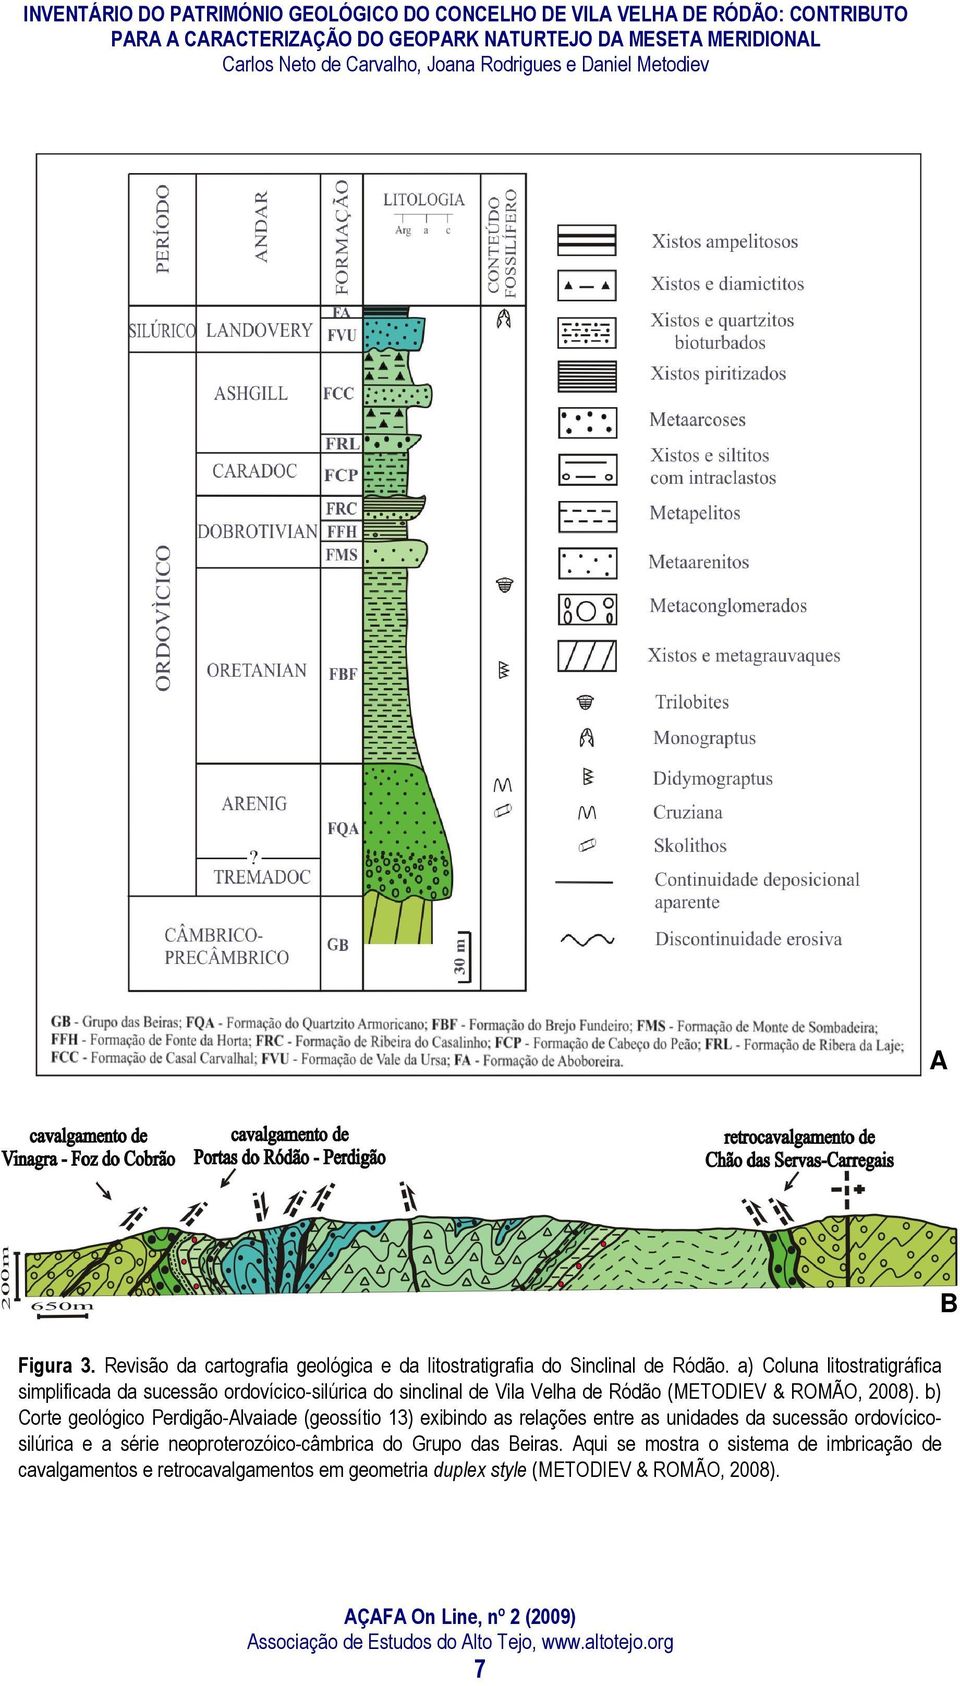 b) Corte geológico Perdigão-Alvaiade (geossítio 13) exibindo as relações entre as unidades da sucessão ordovícicosilúrica e a série